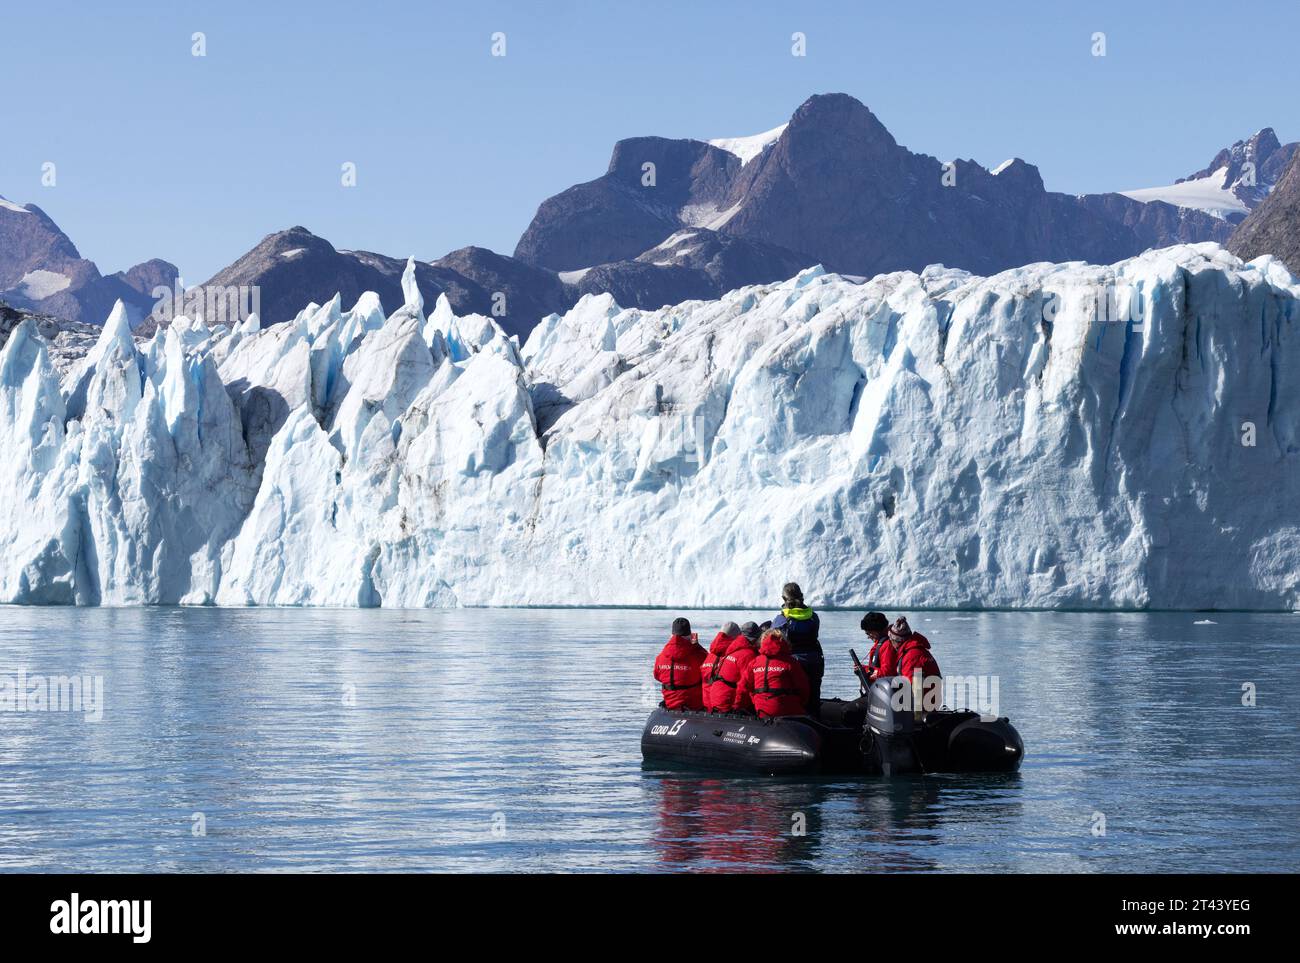 Abenteuerreise - Touristen in einem aufblasbaren Tierkreisboot, die einen Blick aus nächster Nähe auf den Thrym-Gletscher, den Skjoldungen-Fjord, Ostgrönland - Arctic Travel haben Stockfoto